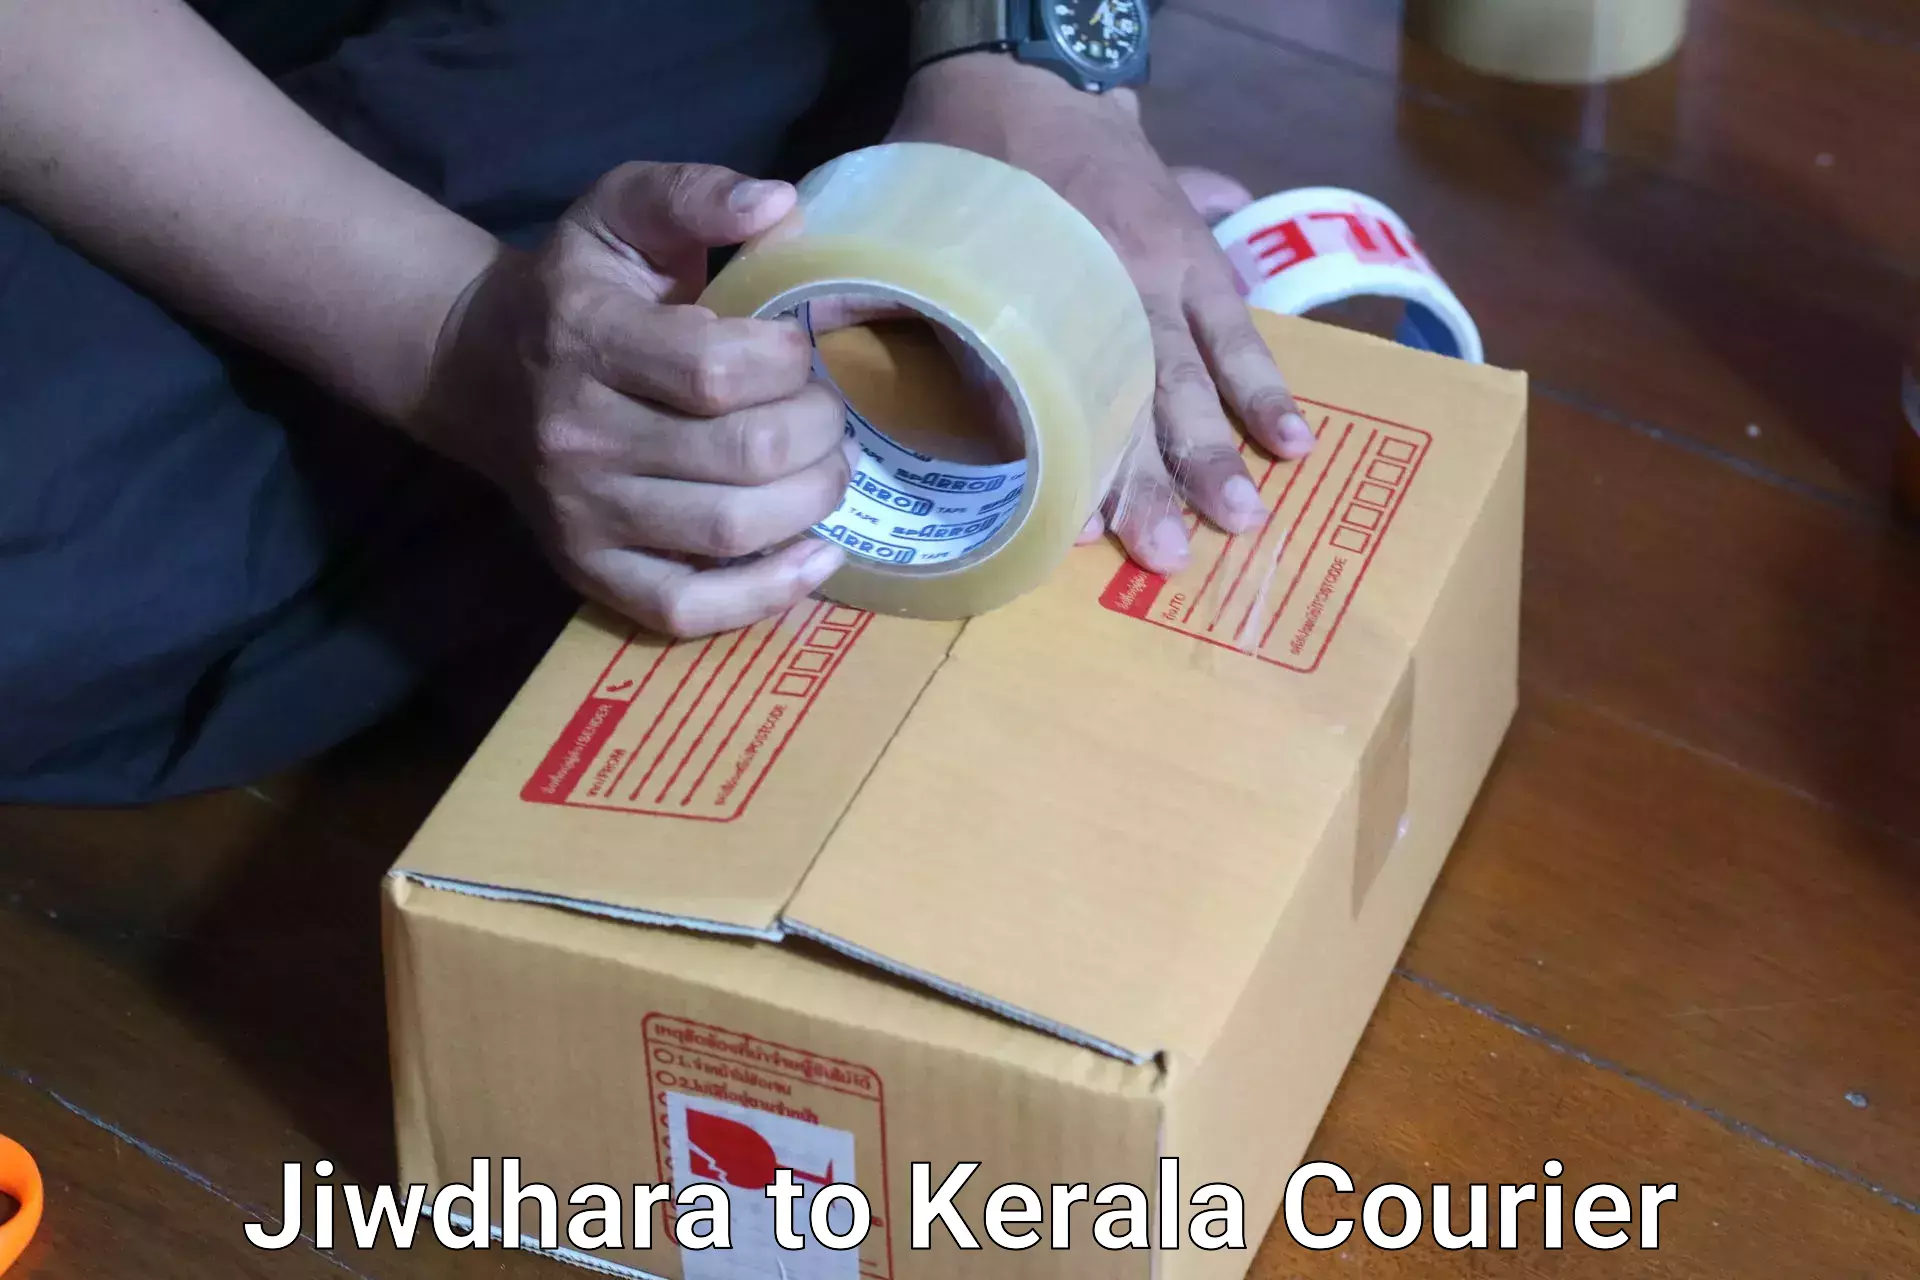 Baggage shipping experts Jiwdhara to Kerala